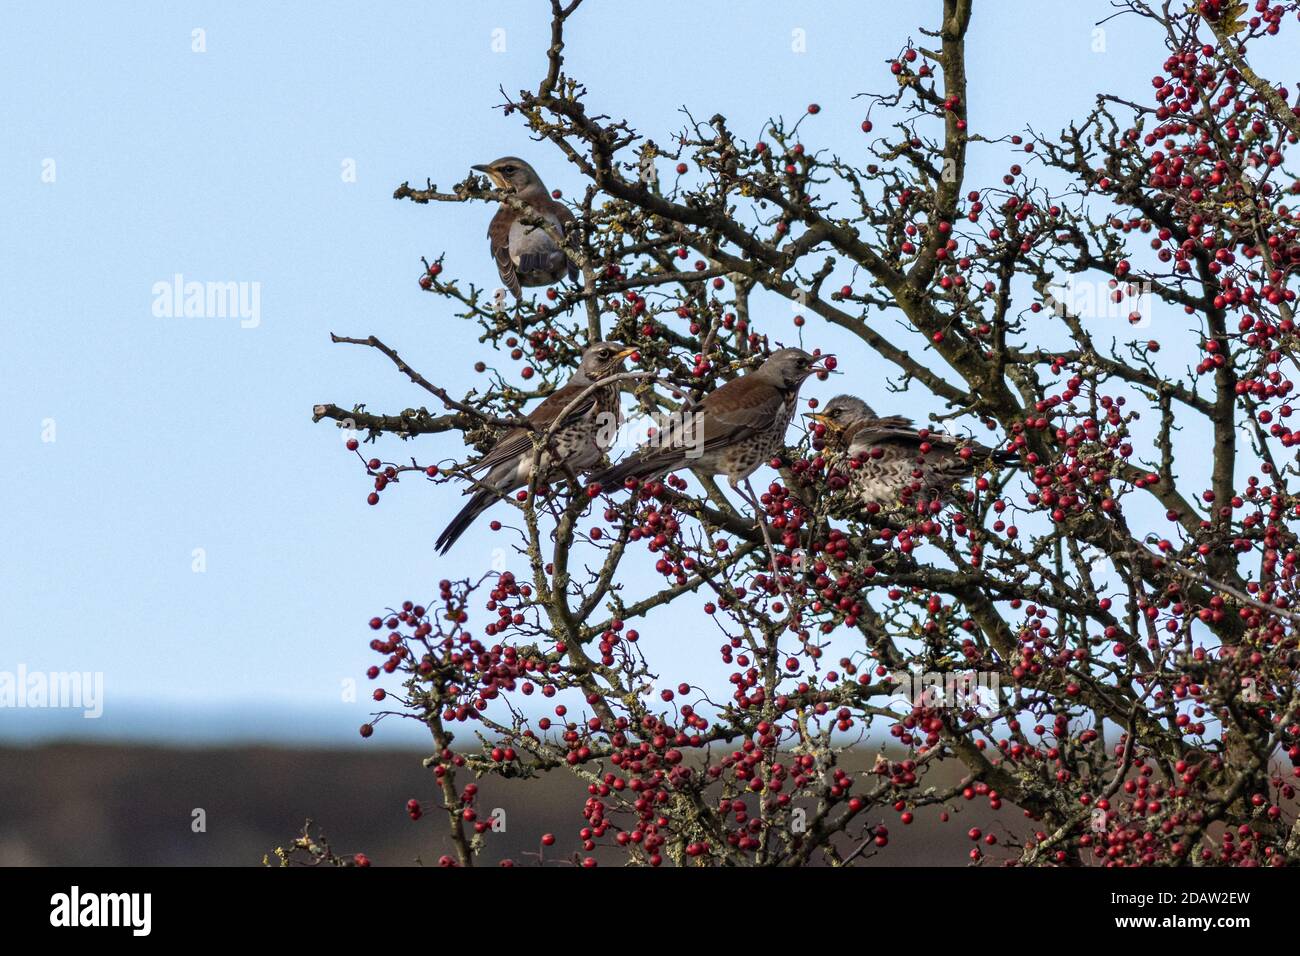 Fauna selvatica del Regno Unito: Gregge di fieldfars (Turdus pilaris) in un albero di biancospino che mangia bacche rosse poco dopo l'arrivo dalla migrazione, Ilkley, West Yorkshire Foto Stock